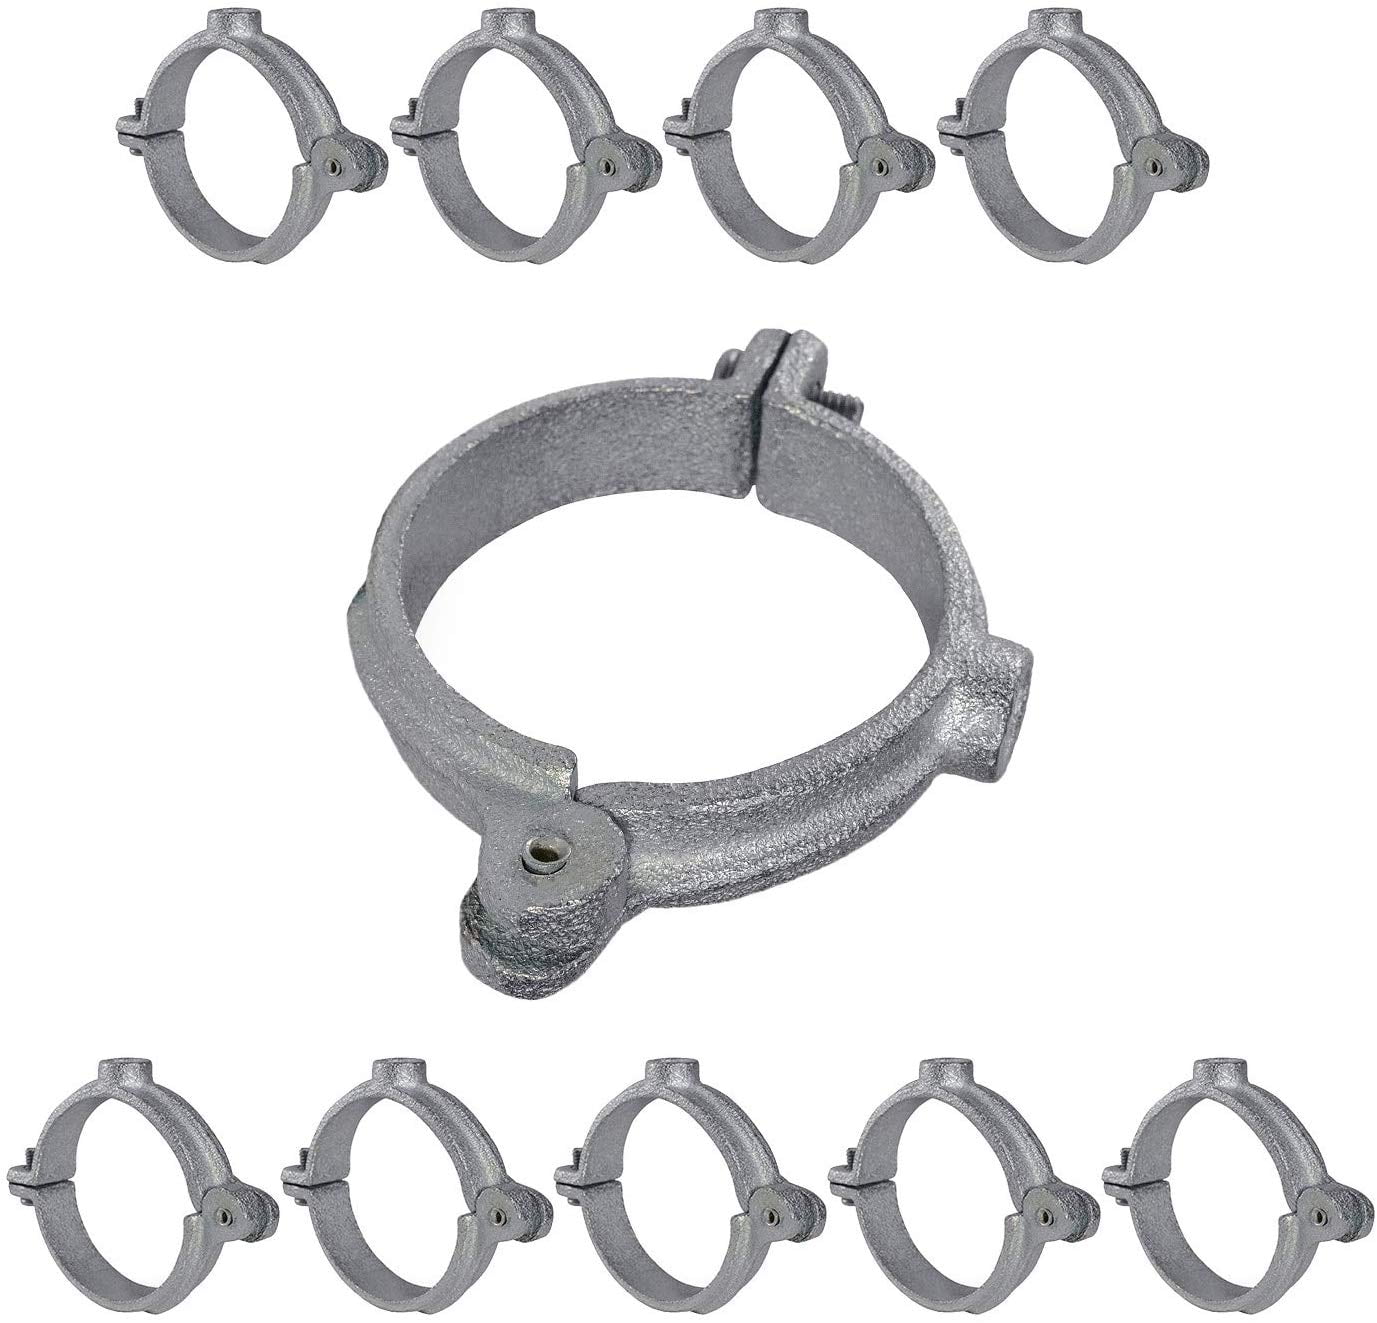 3 Pcs Jones Stephens #H72-150 Zinc Hinged Split Ring Hanger for 1-1/2" Iron Pipe